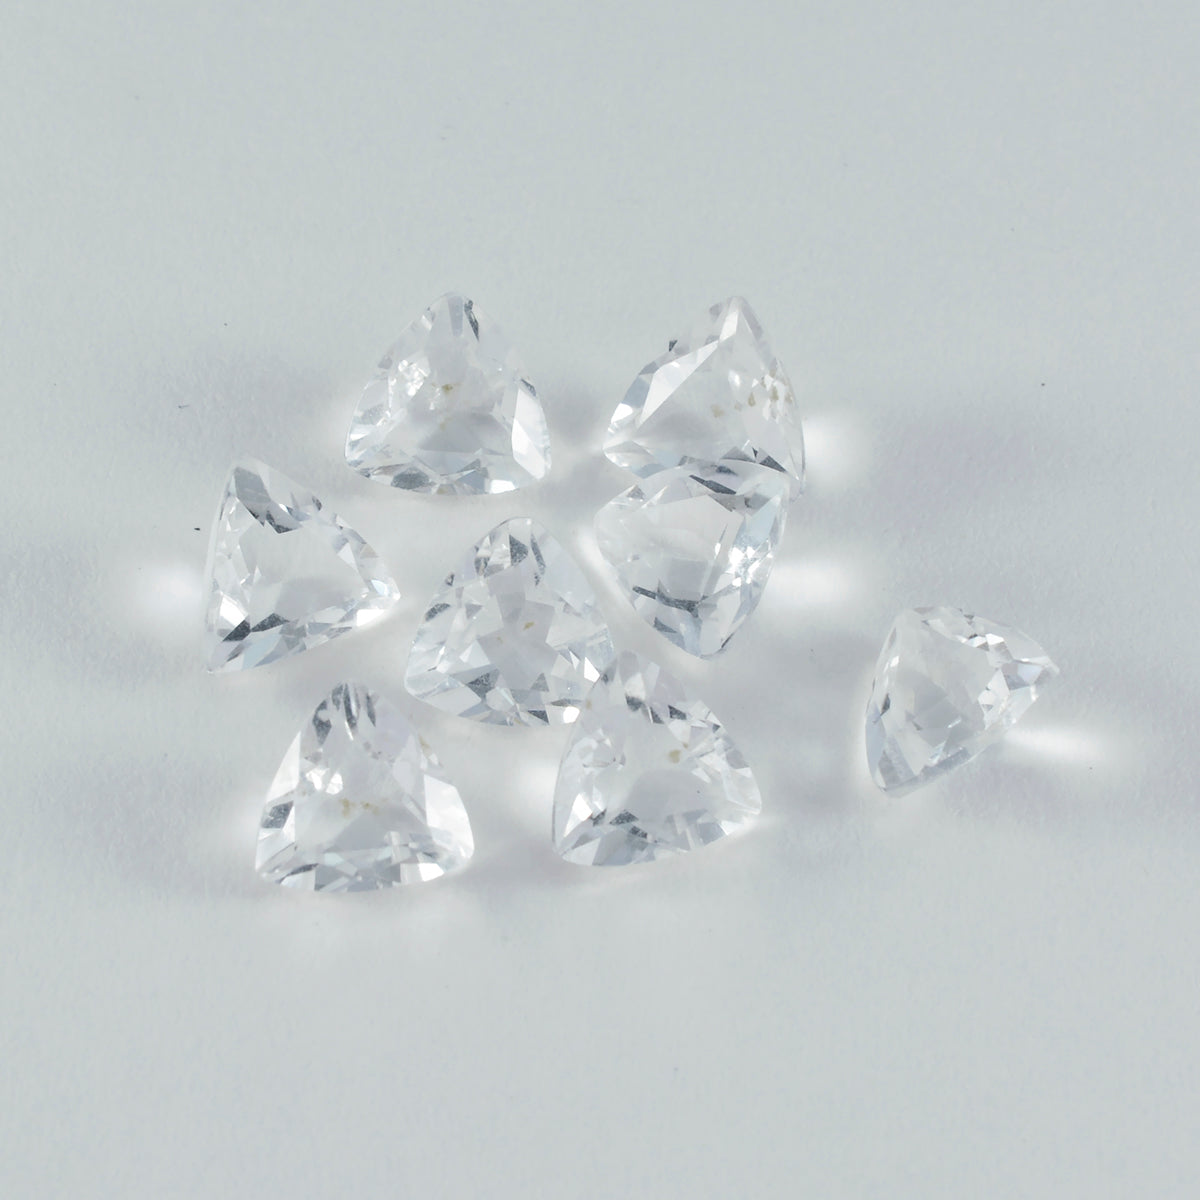 riyogems 1 шт., белые кристаллы кварца, граненые 9x9 мм, форма триллиона, красивые качественные свободные драгоценные камни